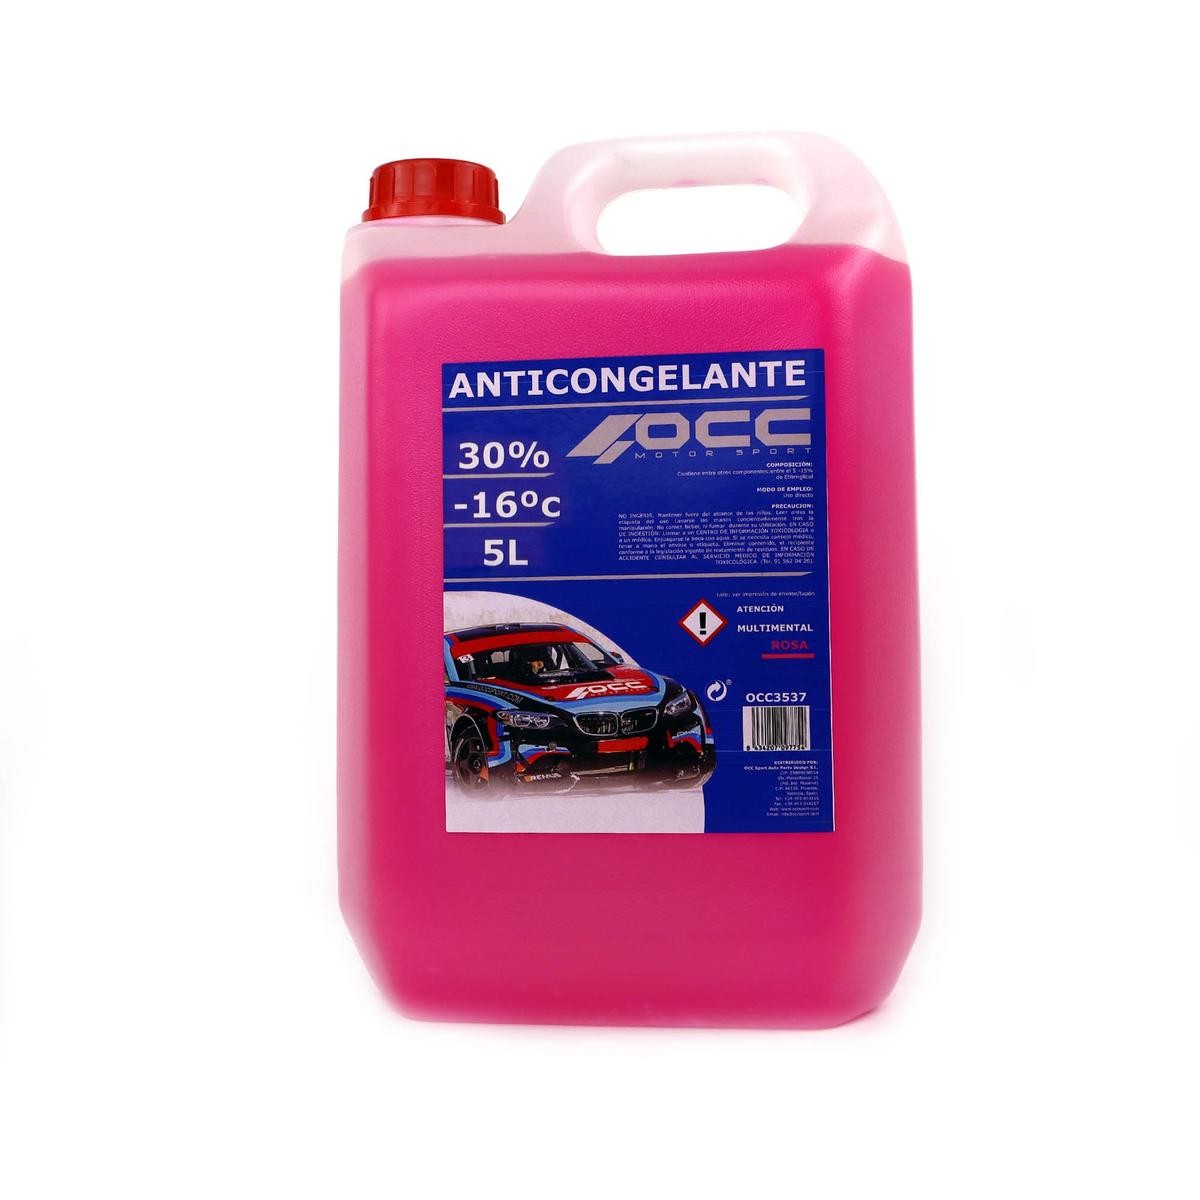 AVIA Antivries / koelvloeistof van Occ Motorsport - artikelnummer: OCC3539